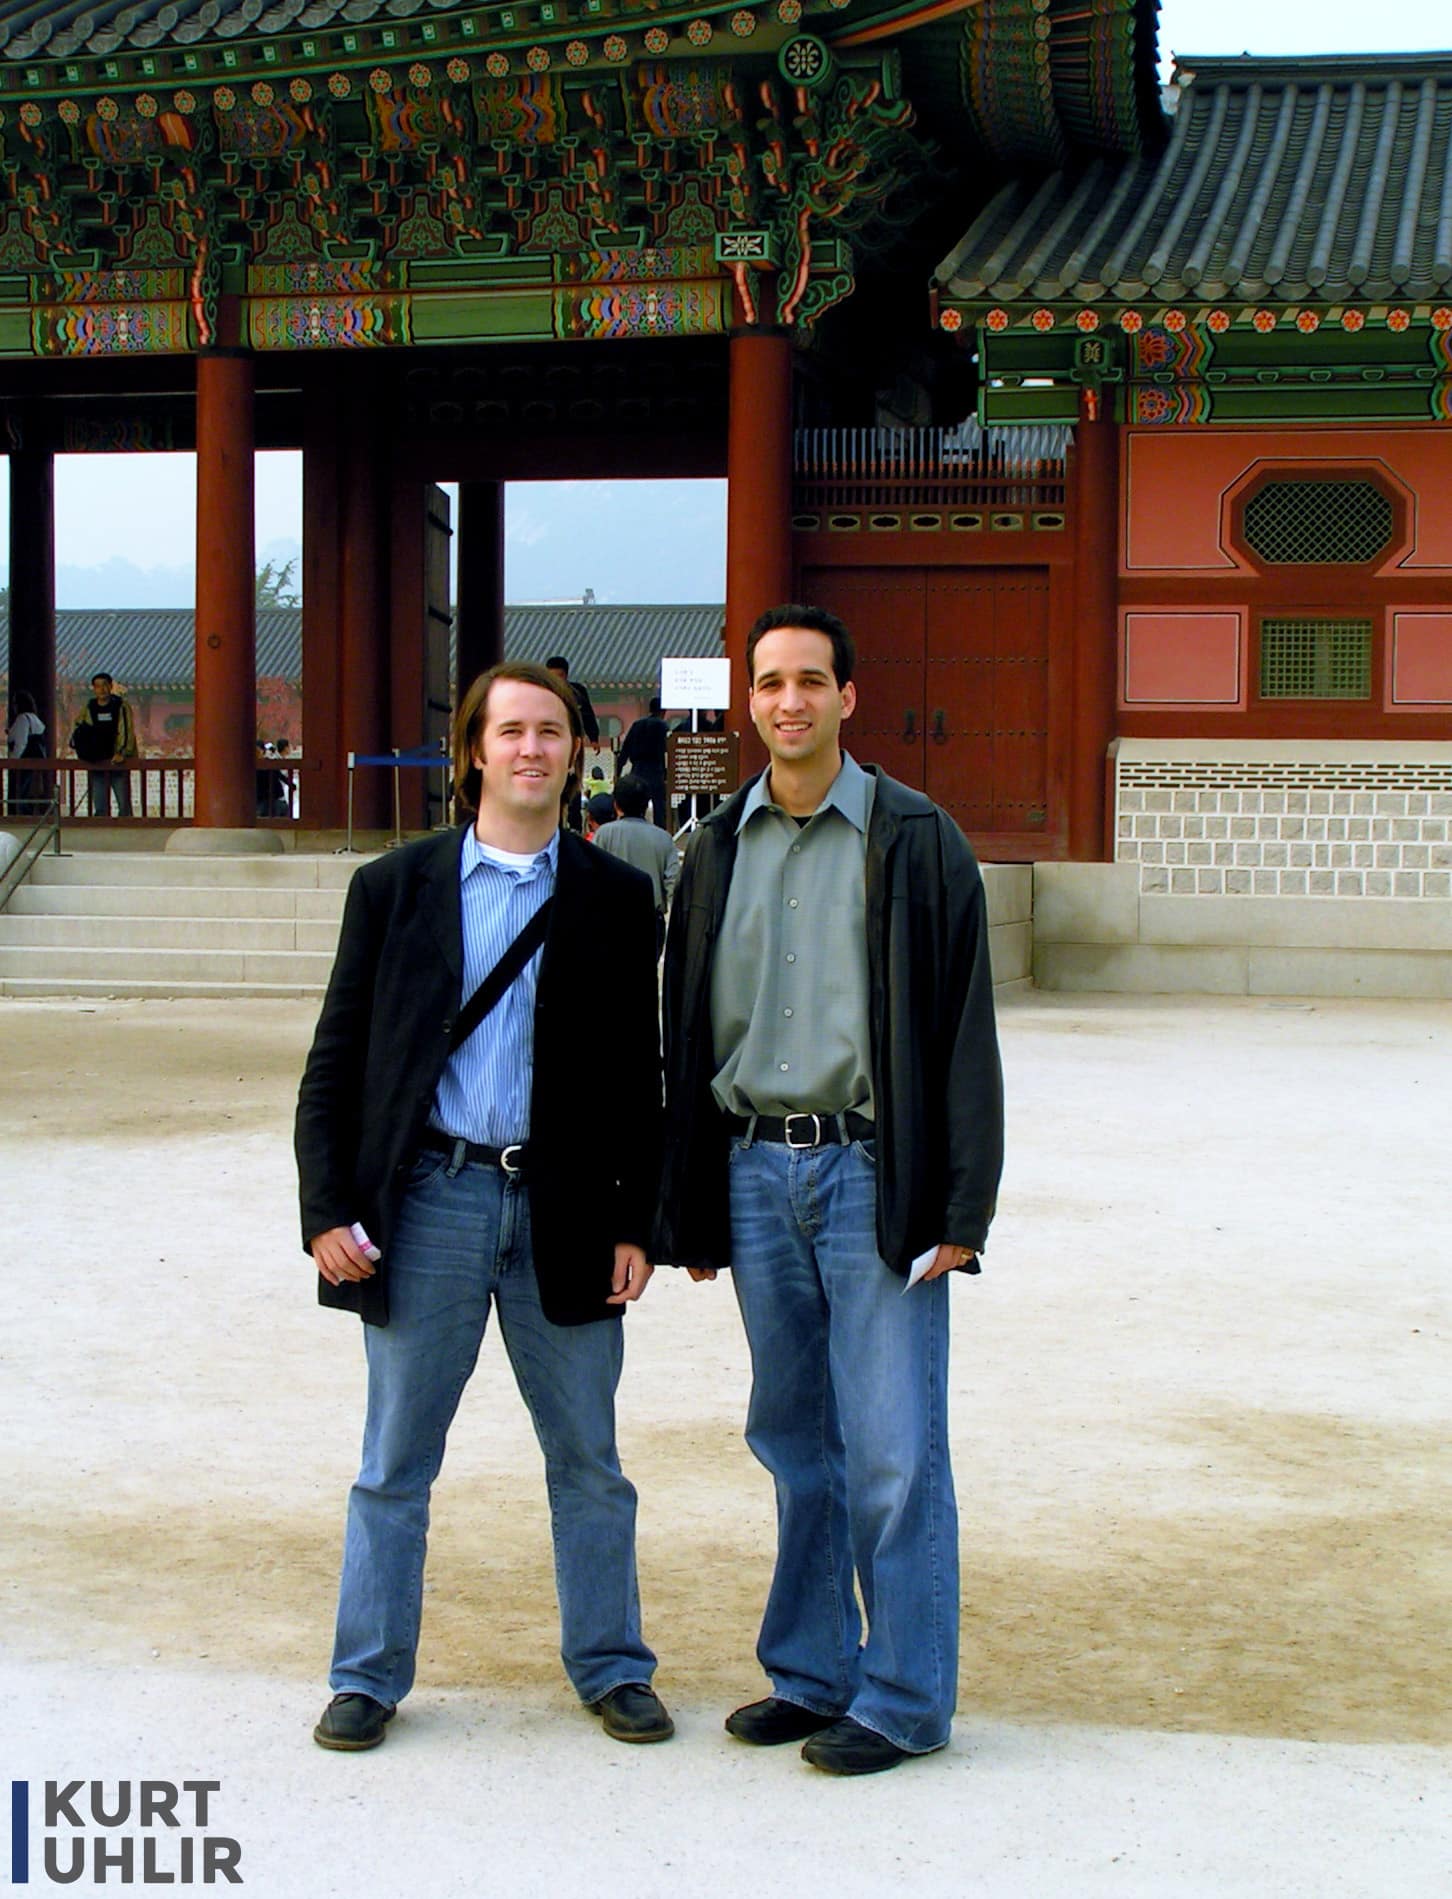 Kurt Uhlir and Jack Mackin - exploring Seoul, South Korea after work